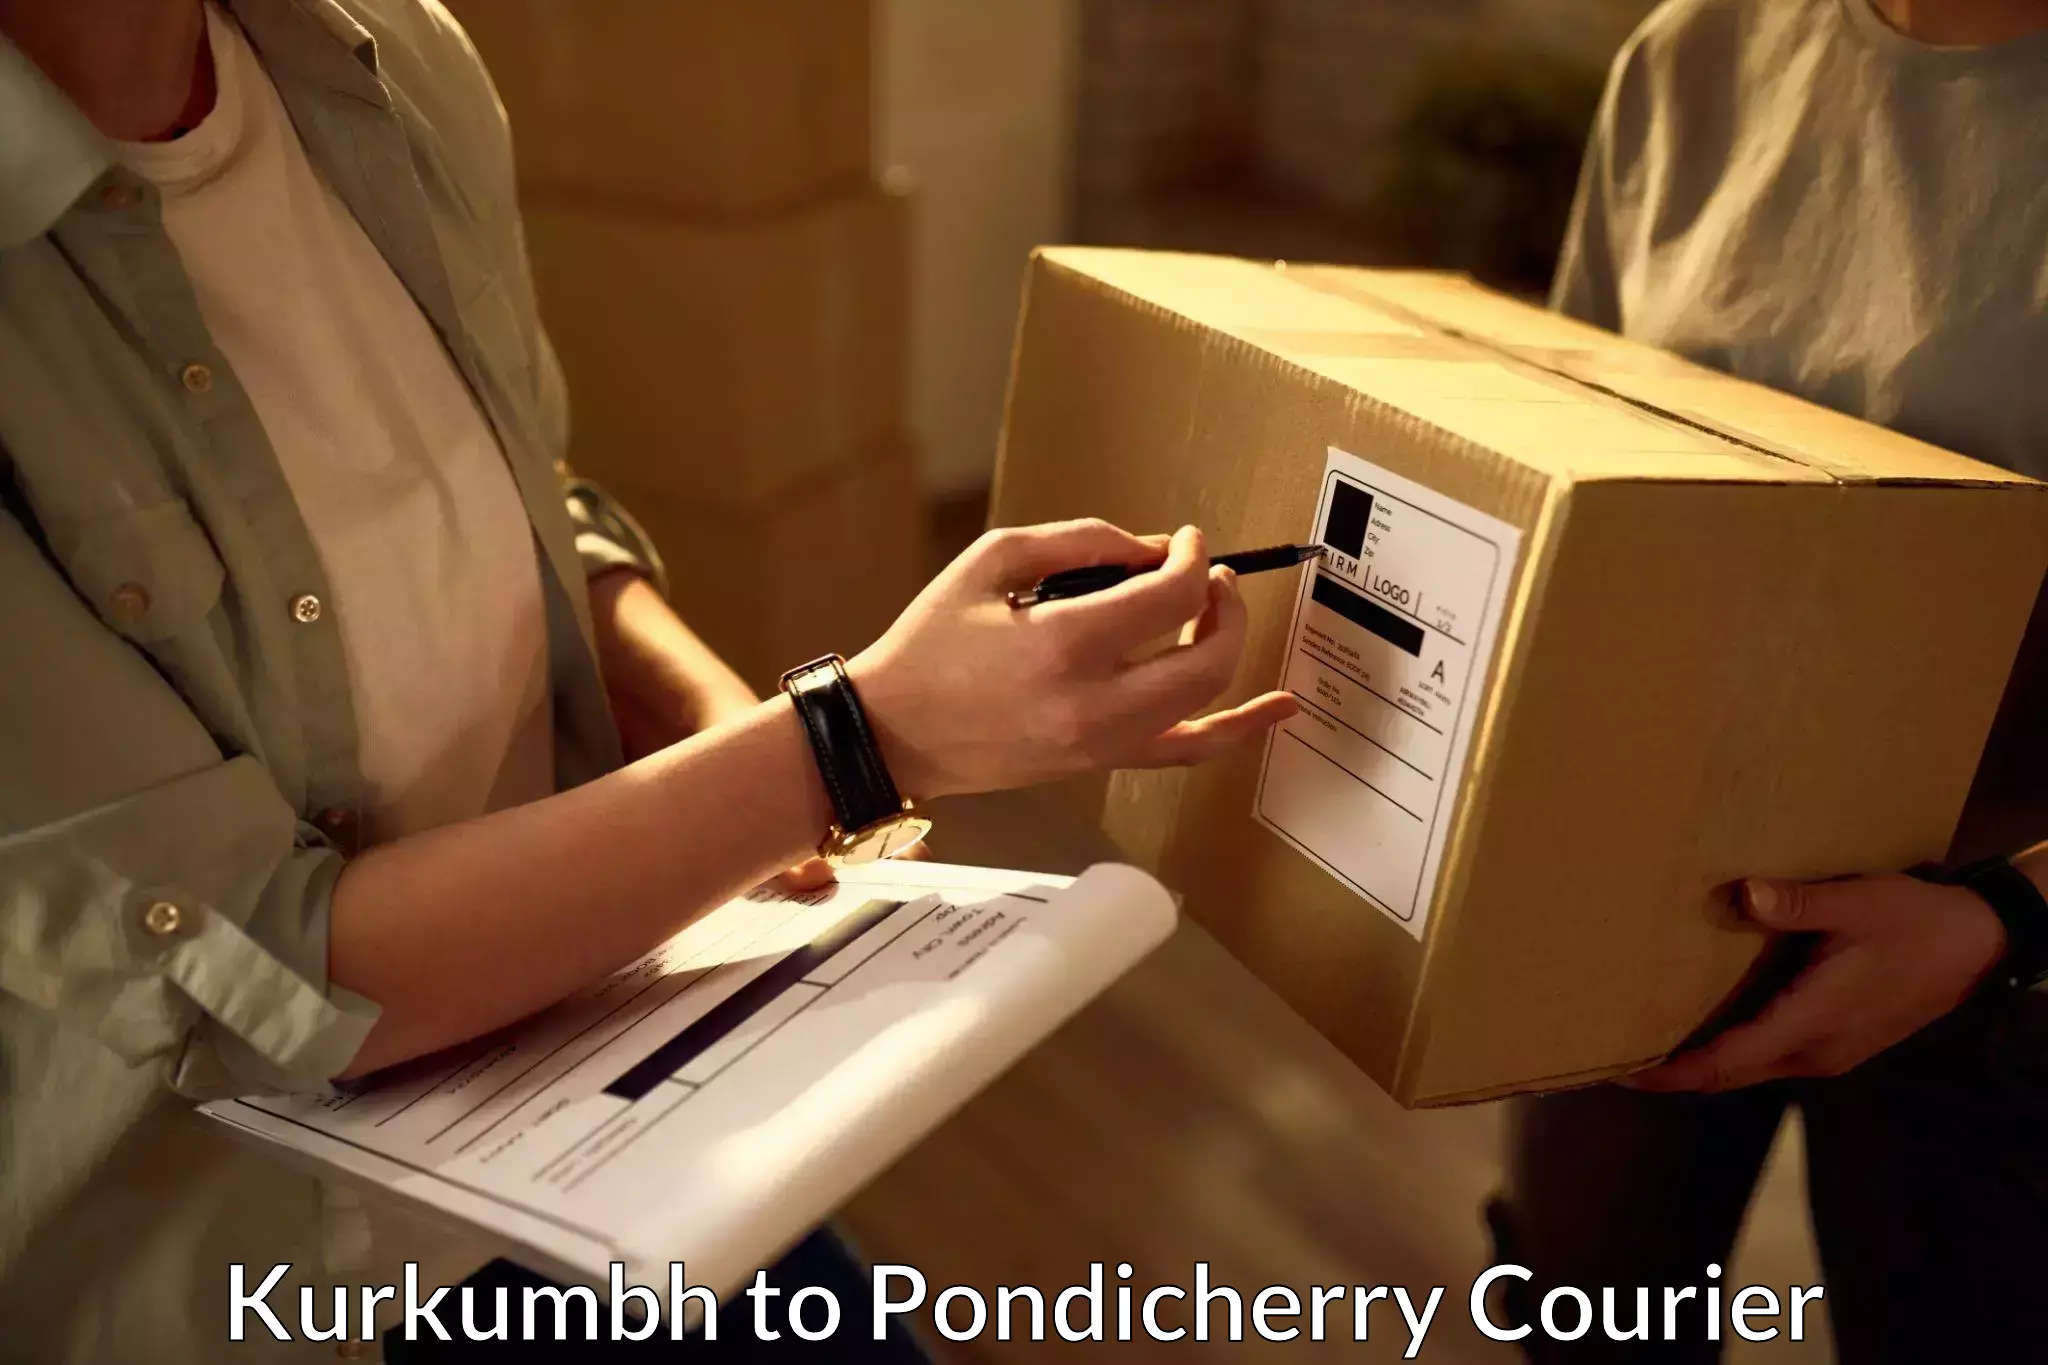 Global shipping networks Kurkumbh to Pondicherry